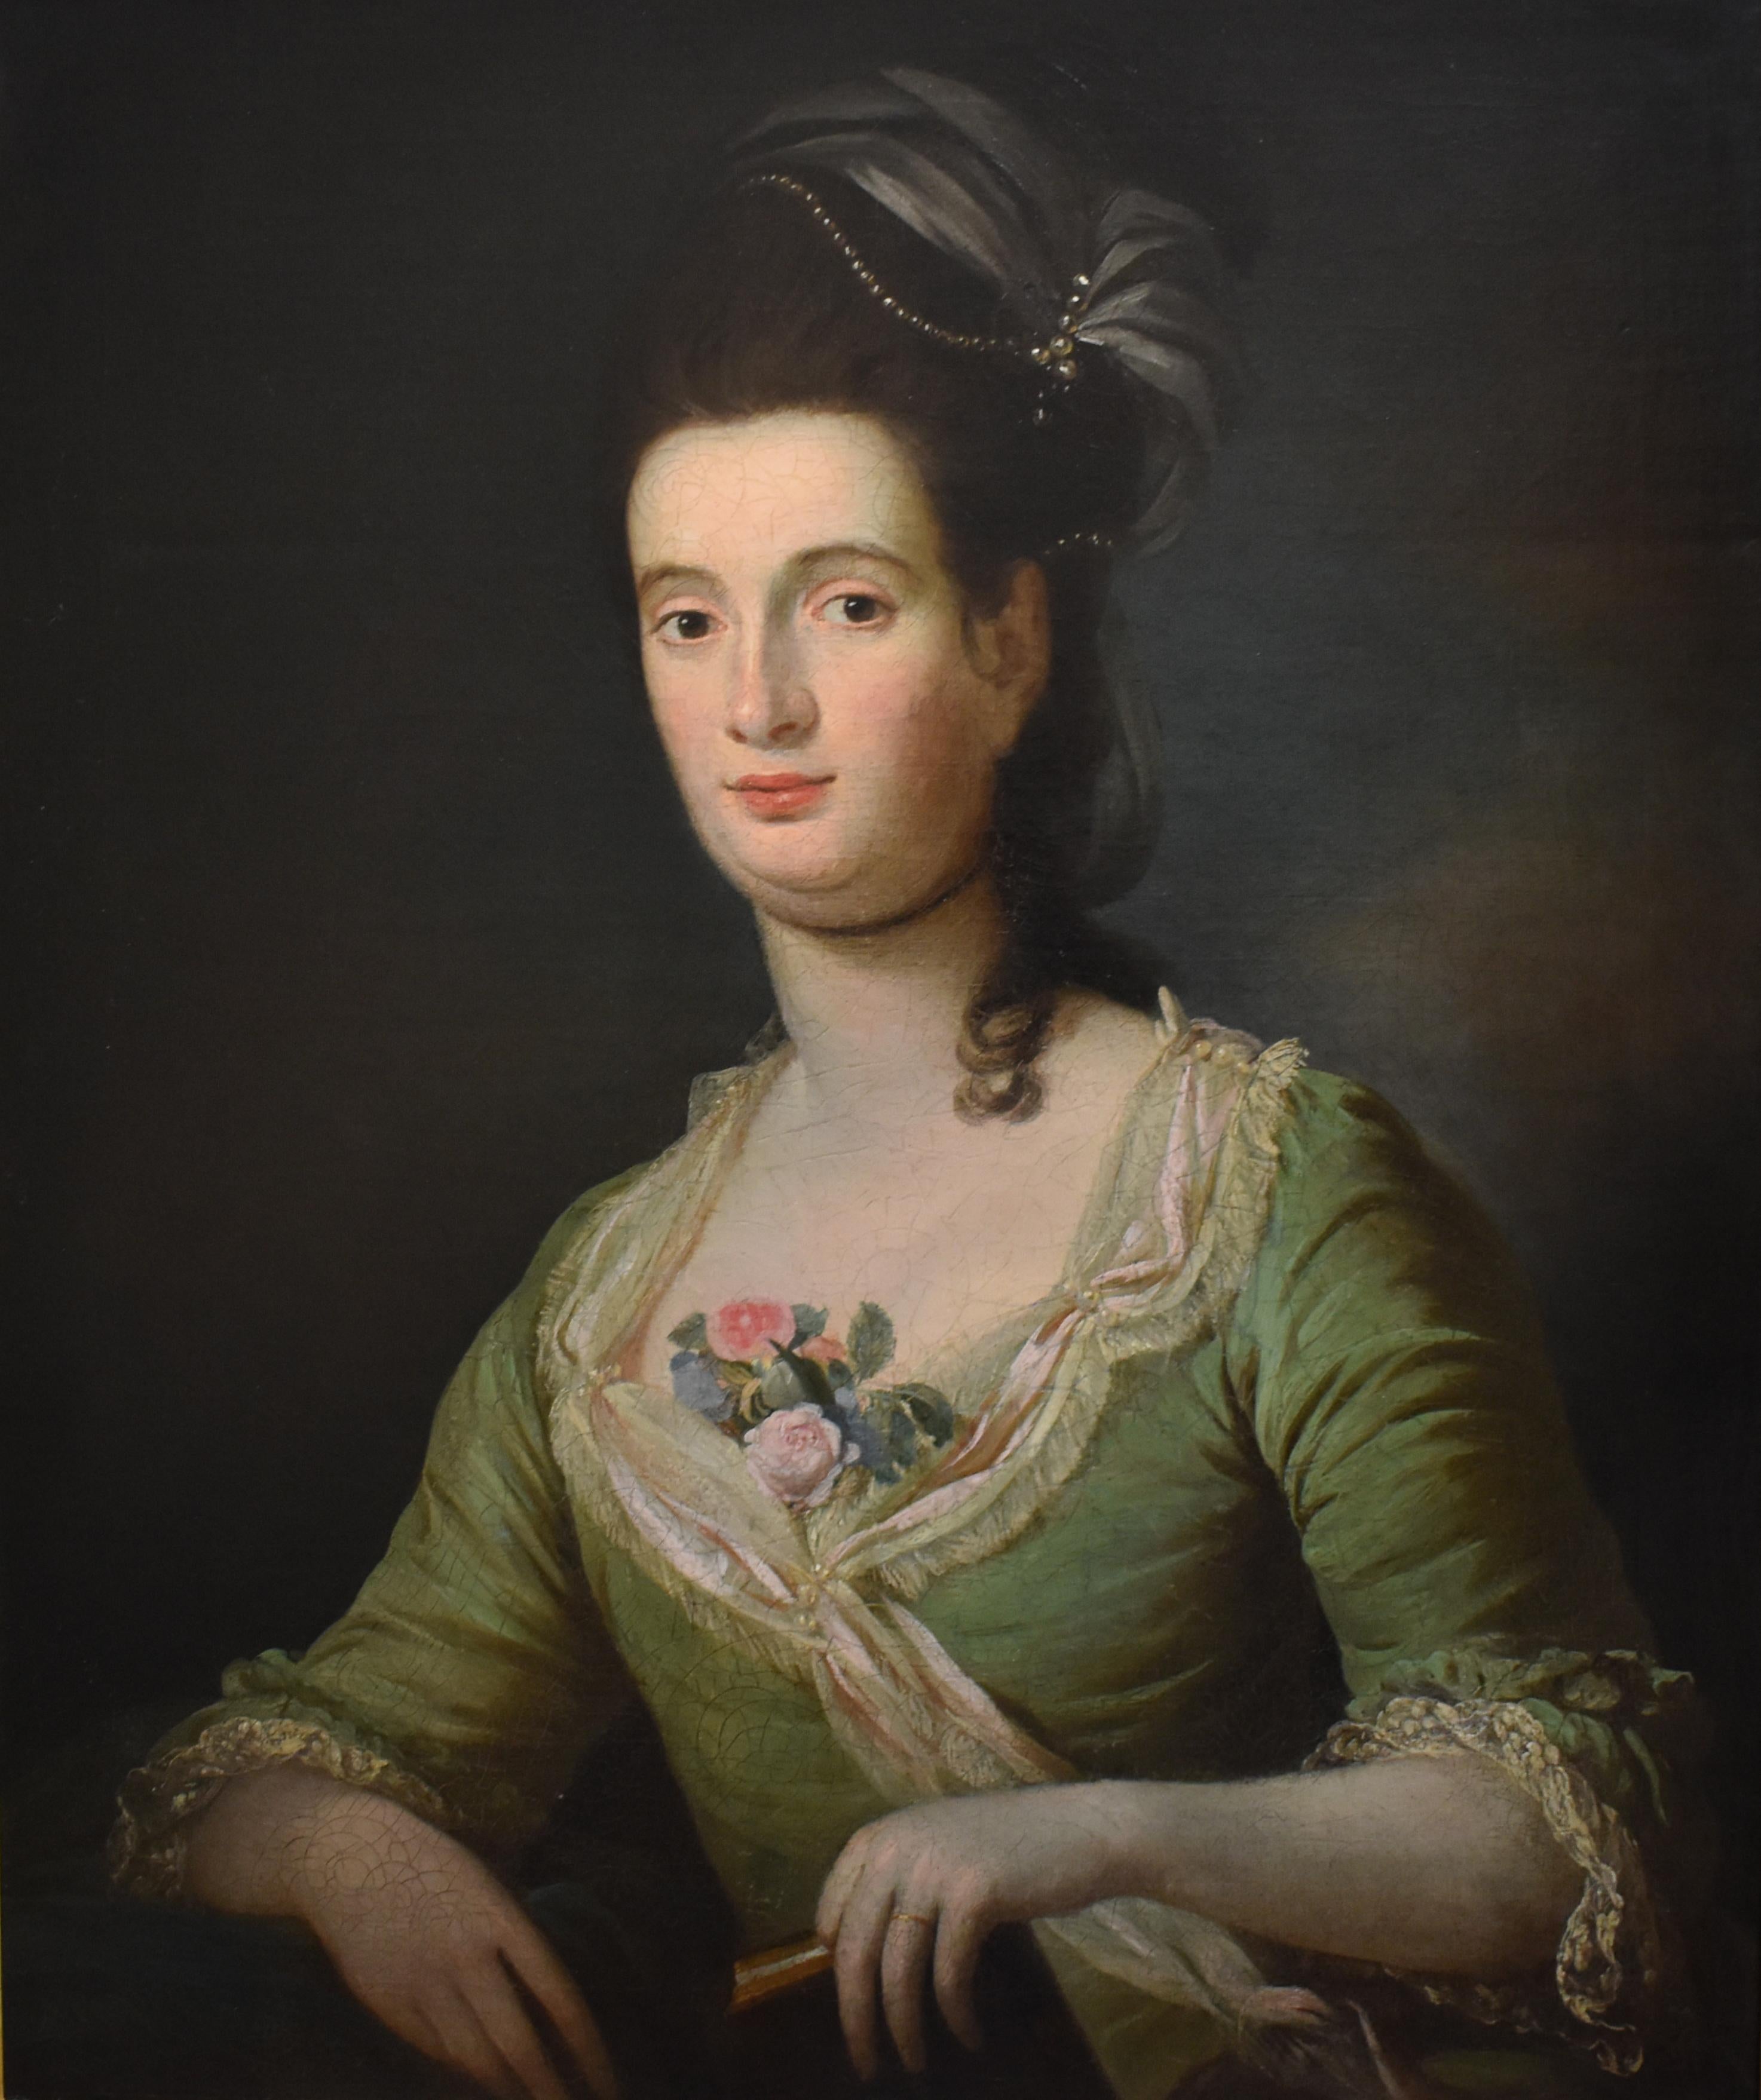 Porträt einer Dame von Rang um 1790 Ölgemälde English School – Painting von Unknown